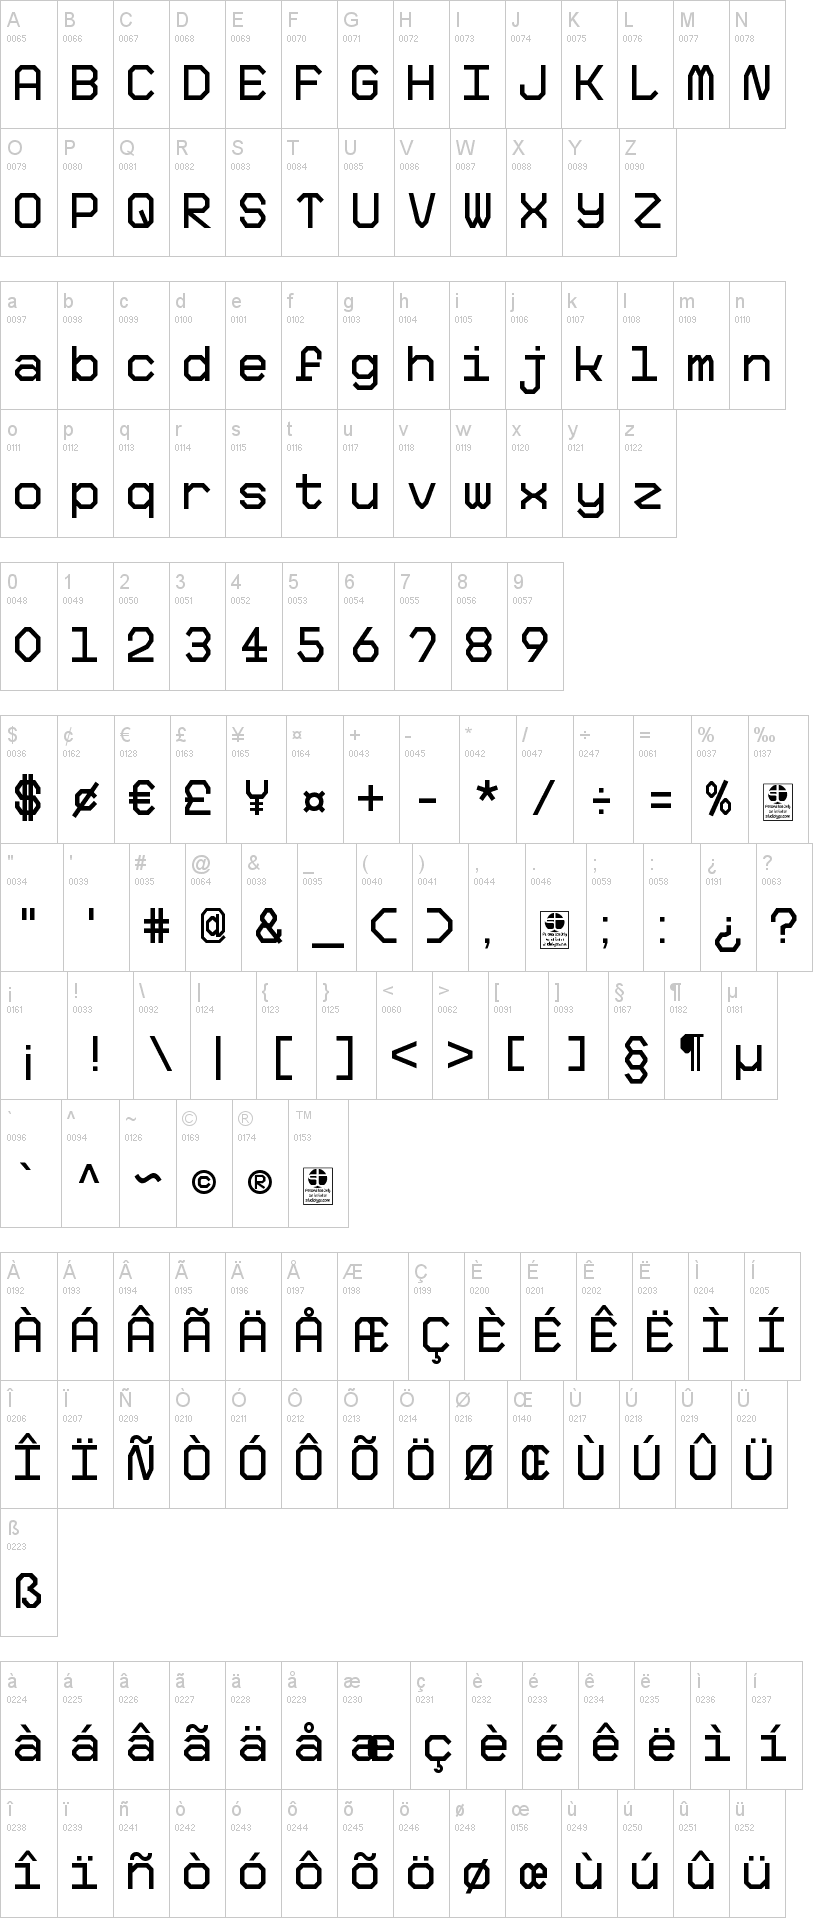 Big Pixel Font | dafont.com